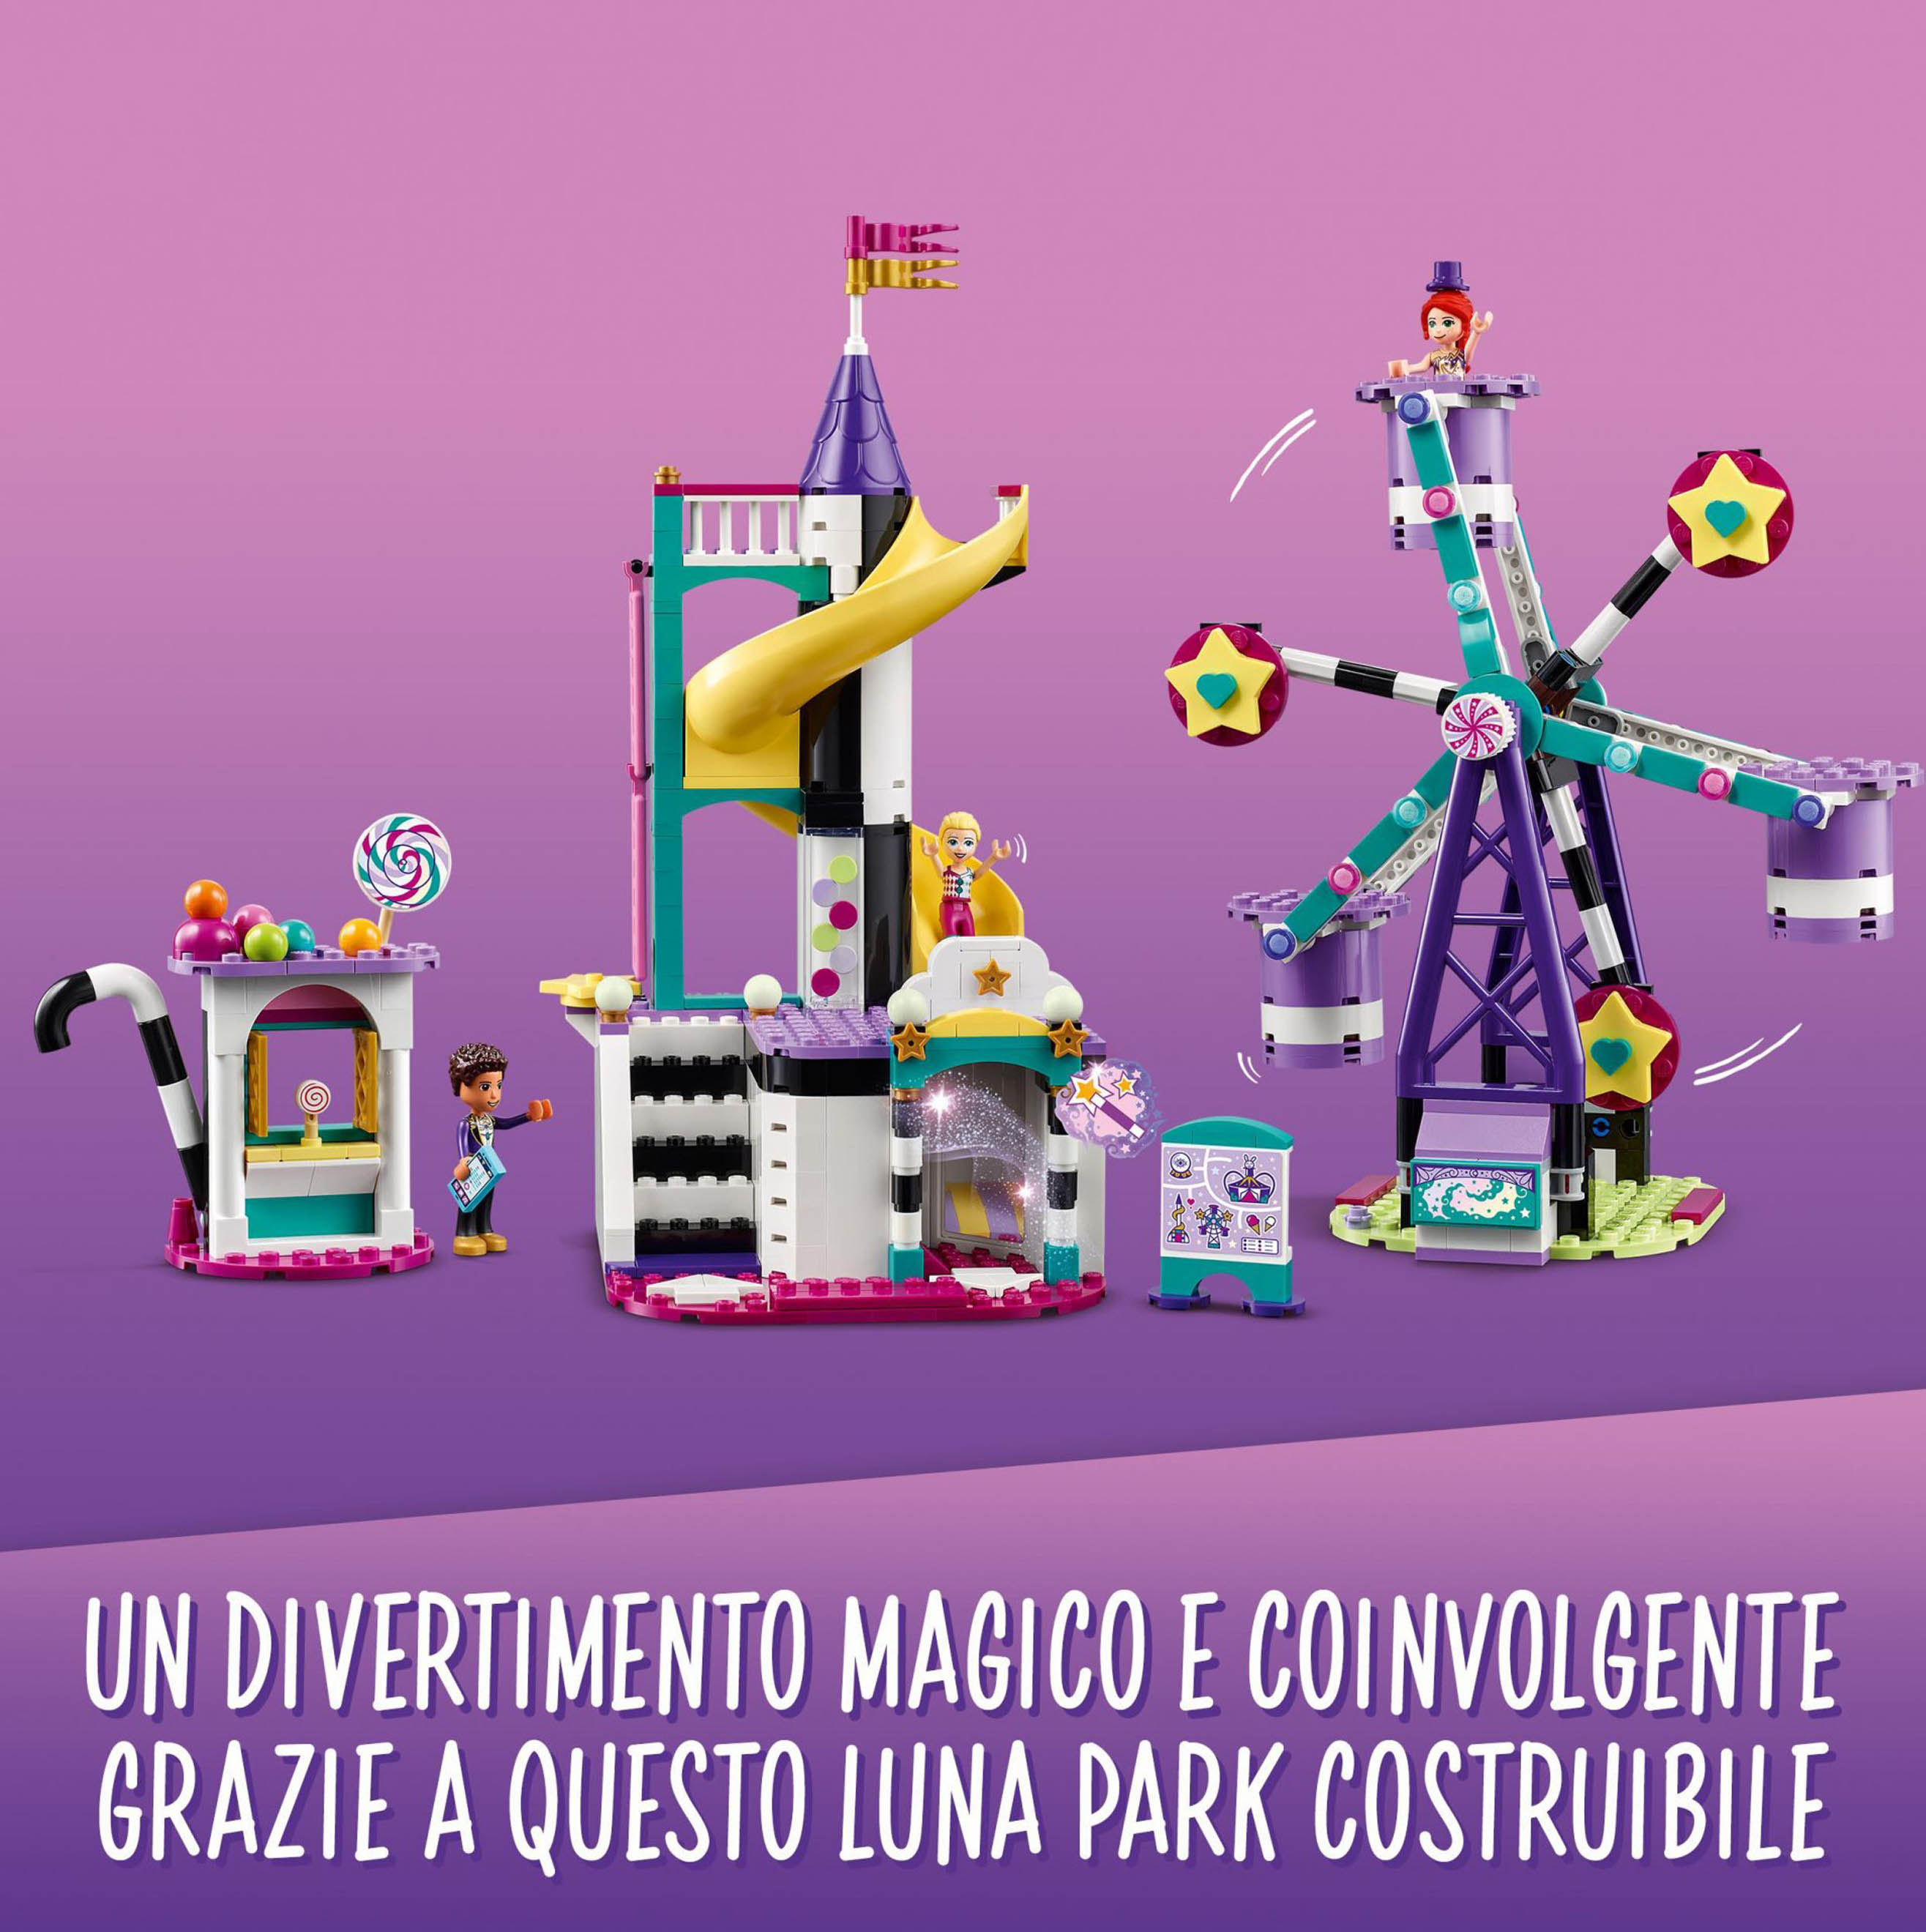 LEGO Friends La Ruota Panoramica e lo Scivolo Magici, Costruzioni per Bambini a  41689, , large